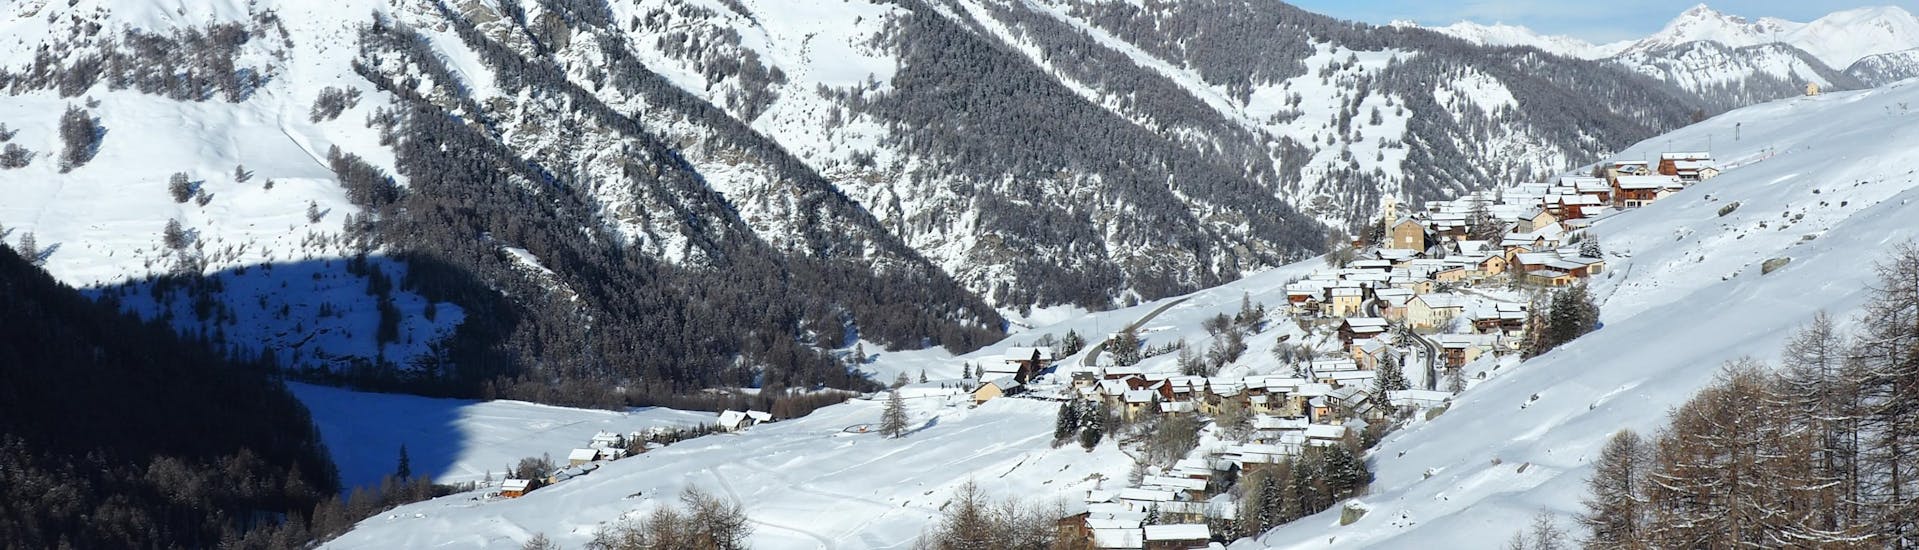 Le charmant village du Queyras en hiver où les écoles de ski proposent des cours de ski.